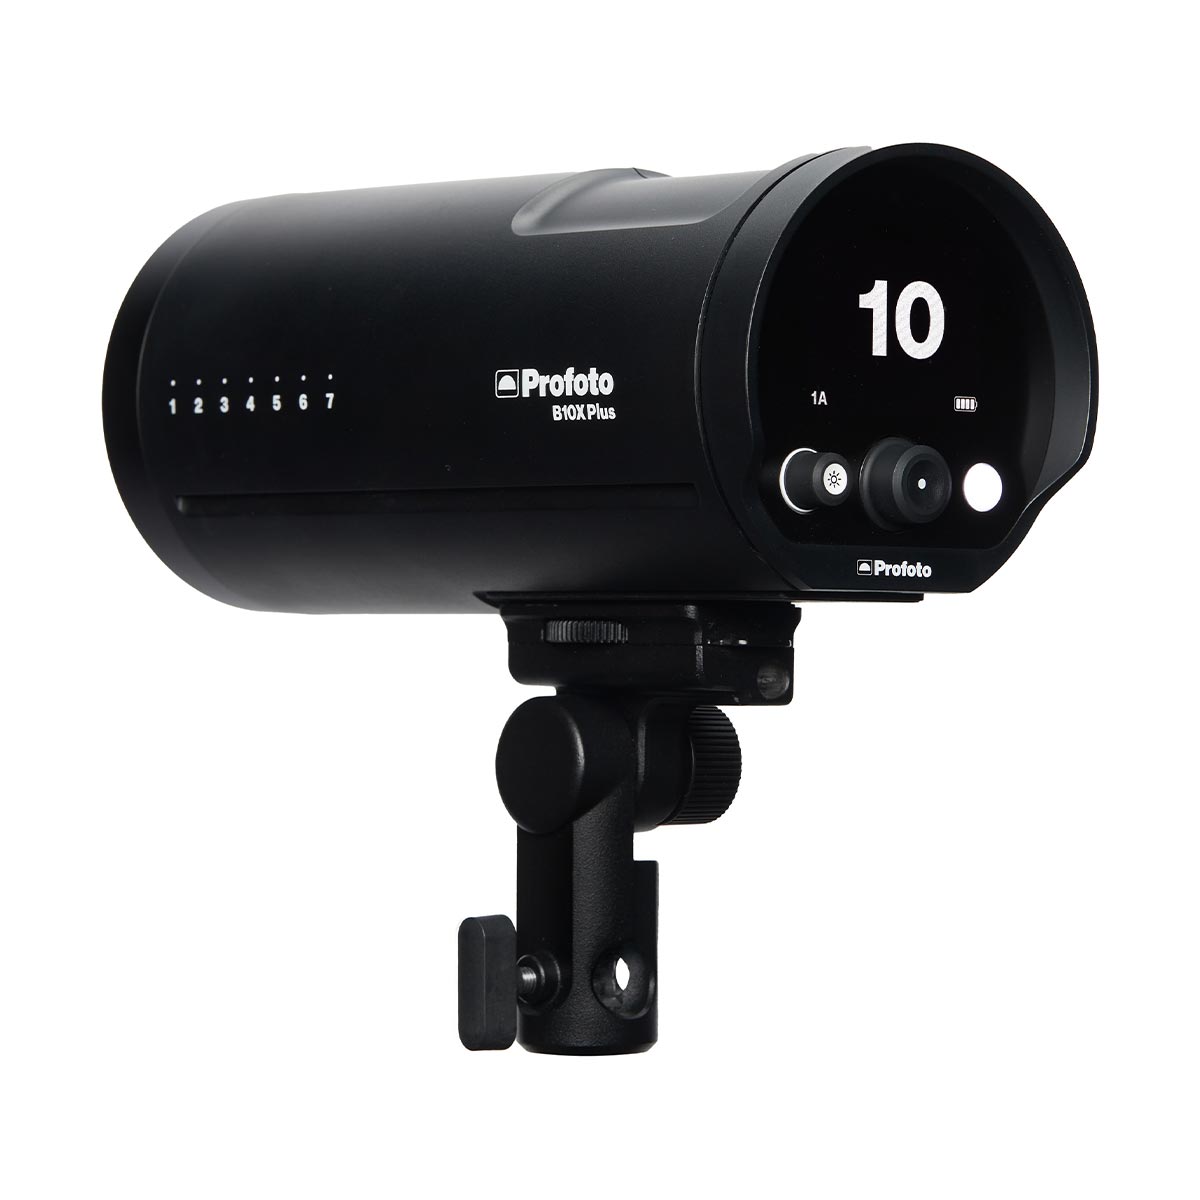 Profoto B10X Plus Air TTL Off-Camera Flash